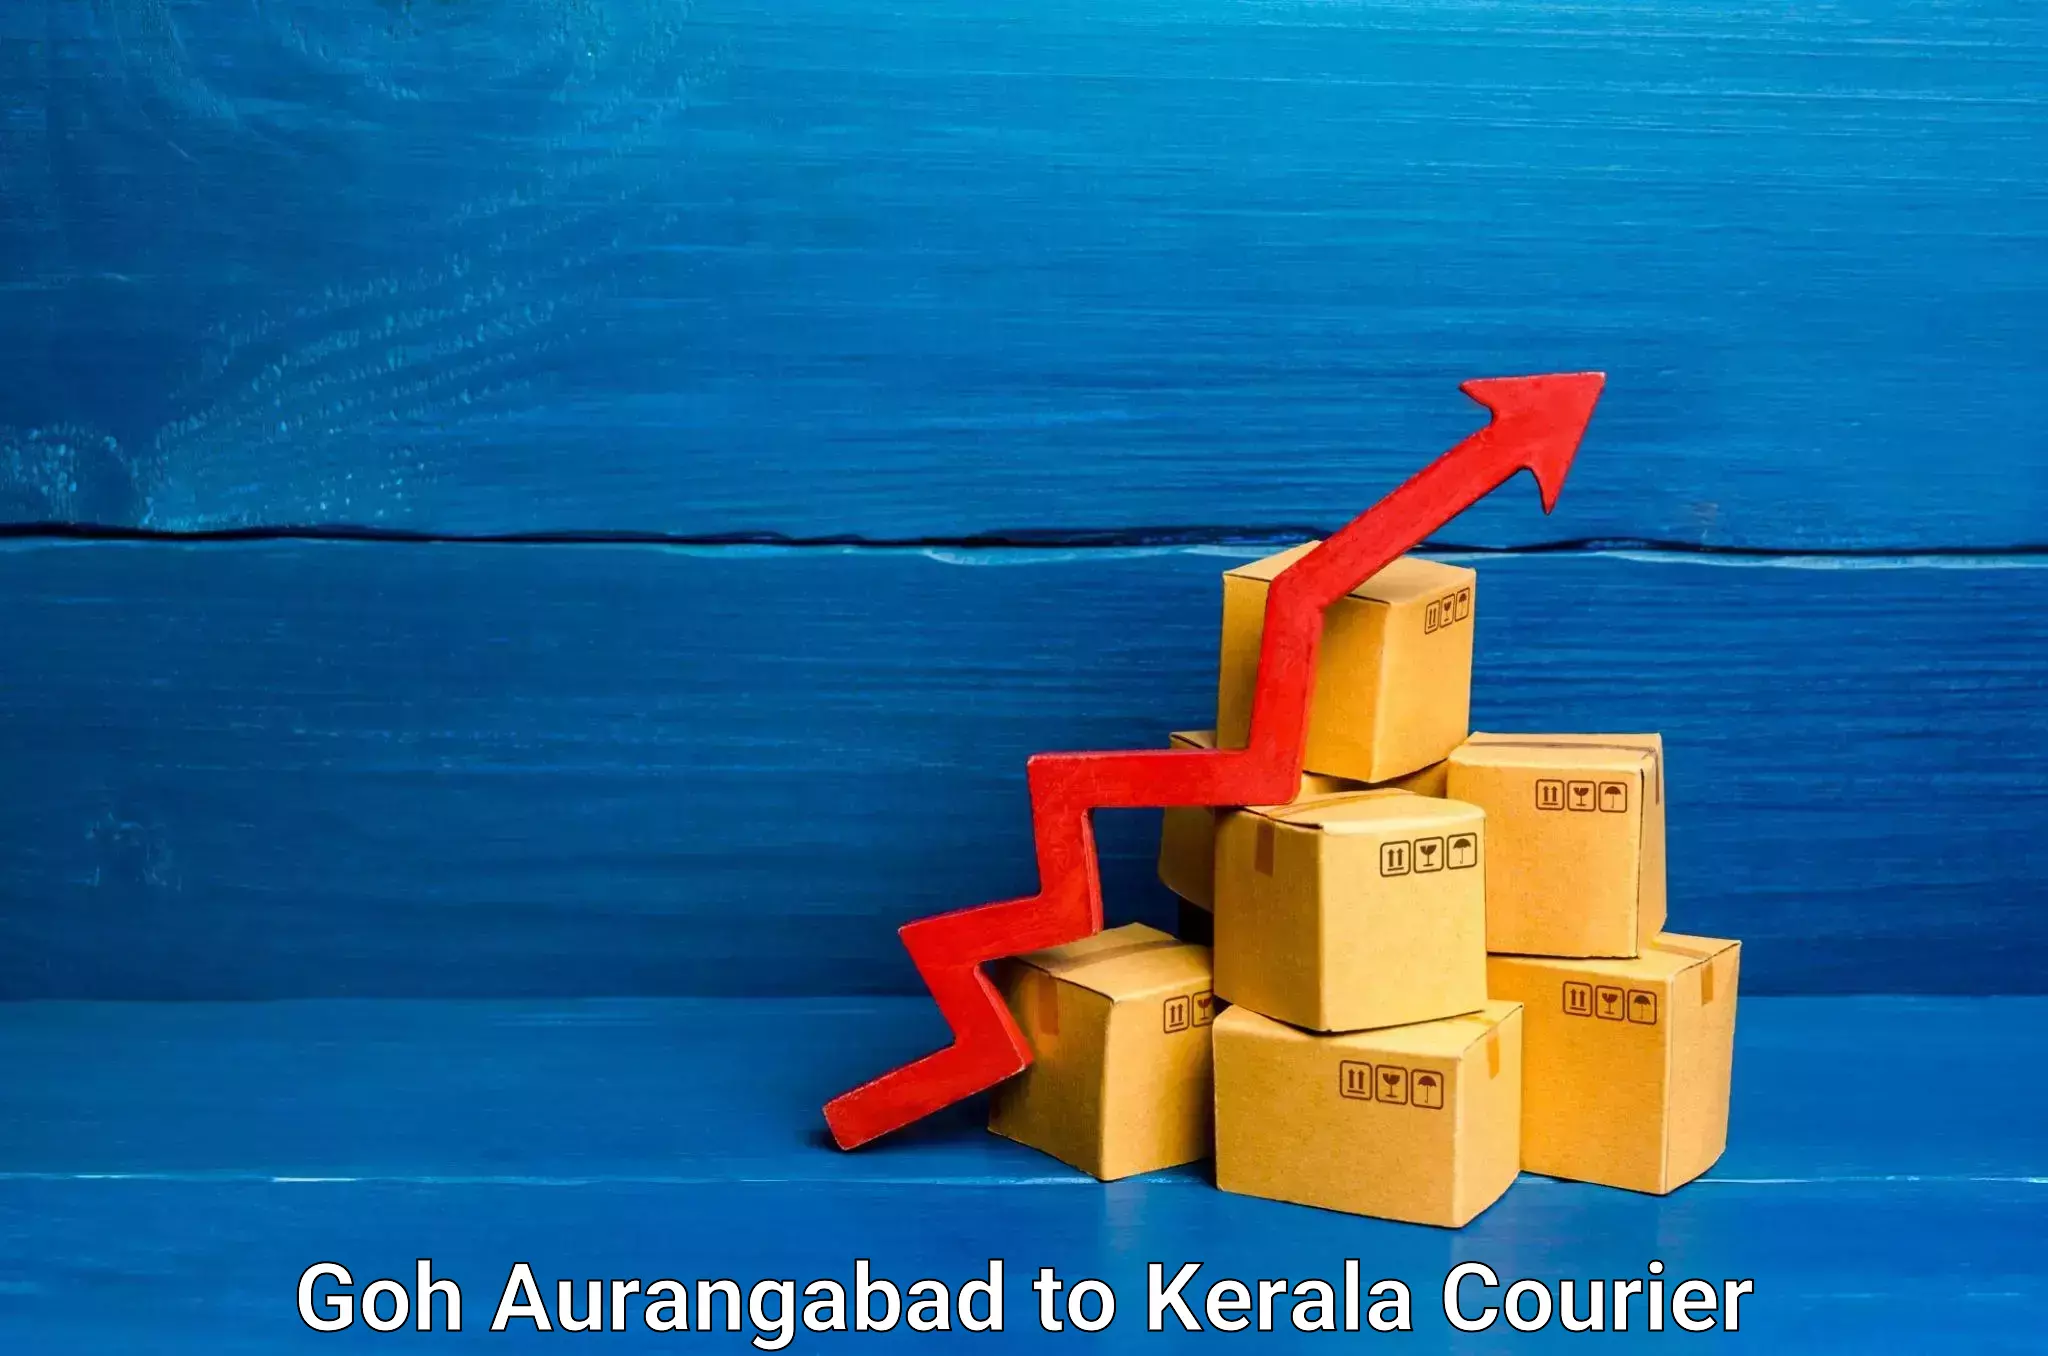 Stress-free household moving Goh Aurangabad to Kochi